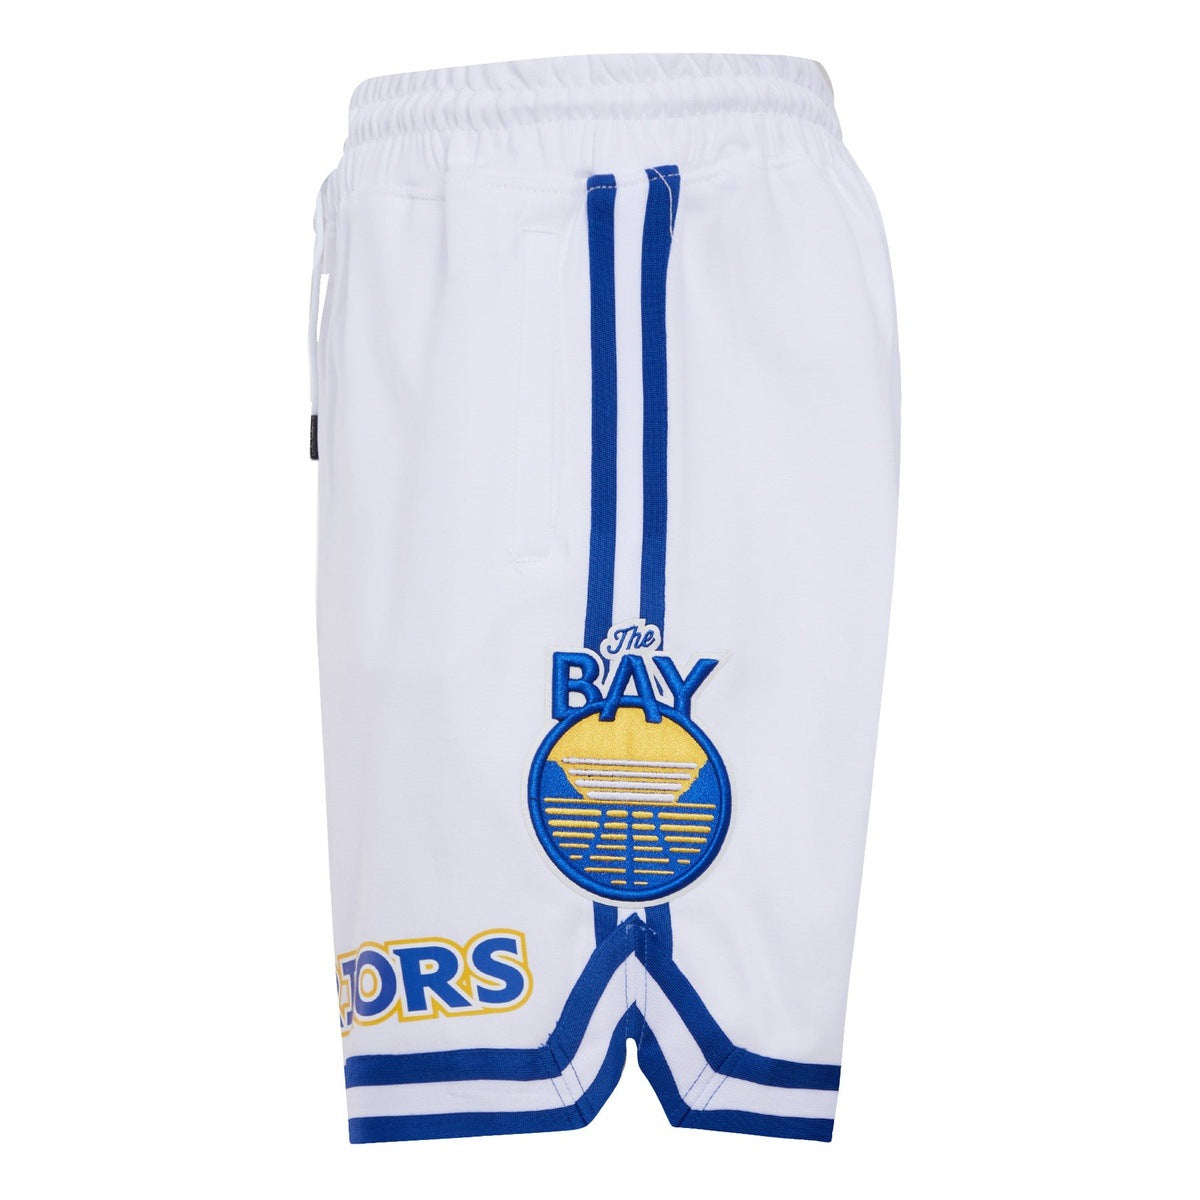 warriors the bay shorts